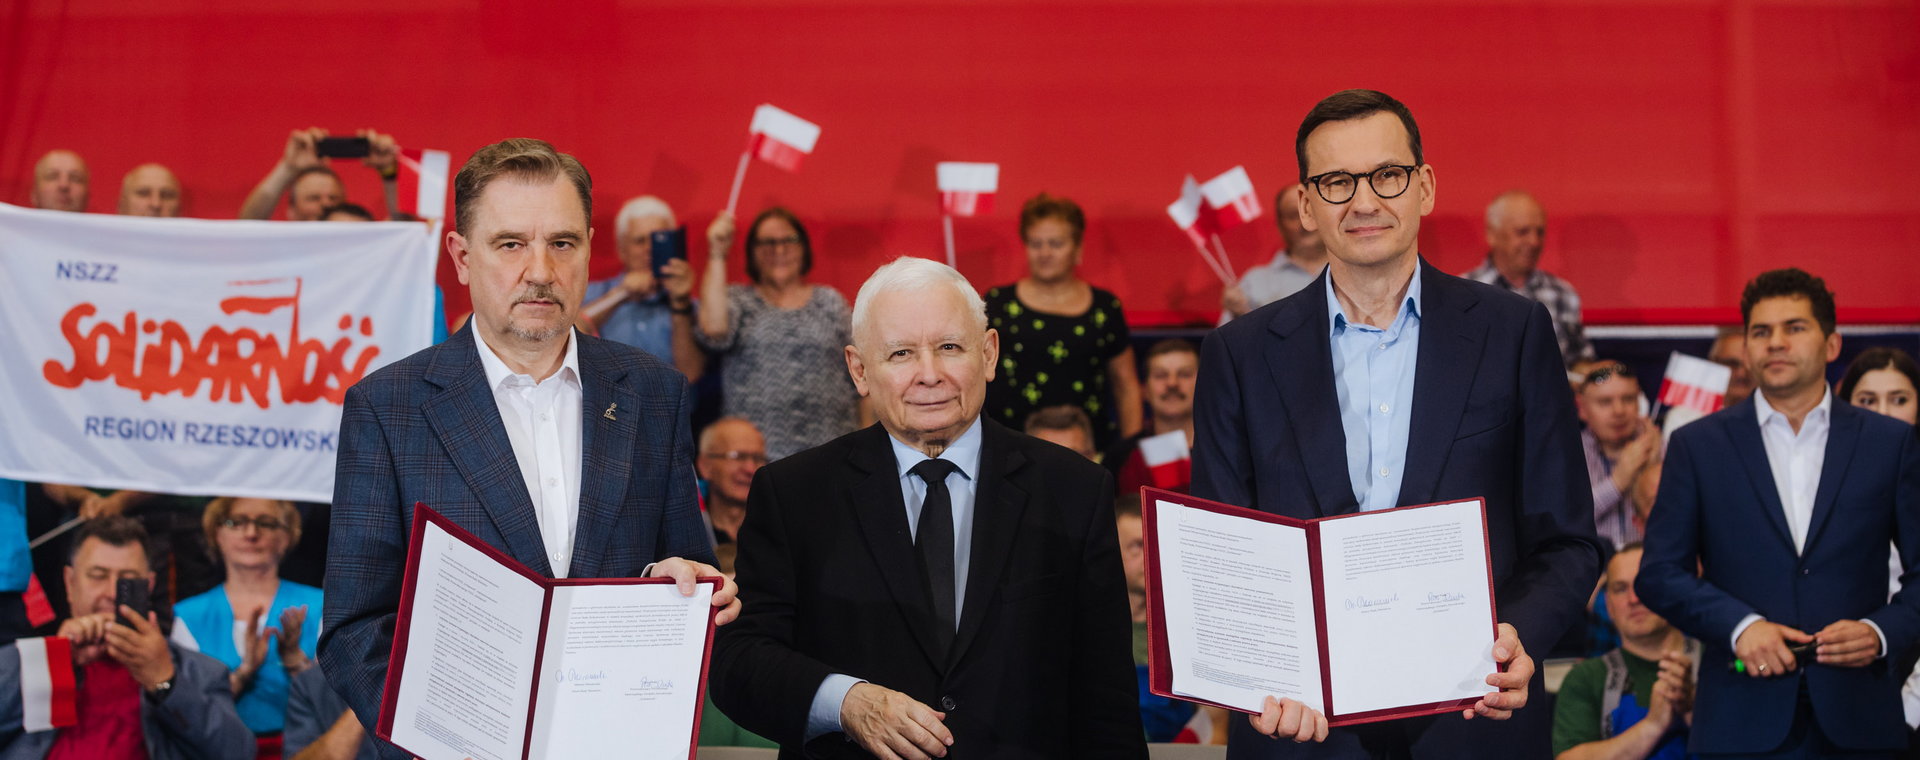 Wzmocnienie ochrony przed zwolnieniem było elementem porozumienia rządu z NSZZ "Solidarność". Na zdjęciu Piotr Duda, Jarosław Kaczyński i Mateusz Morawiecki